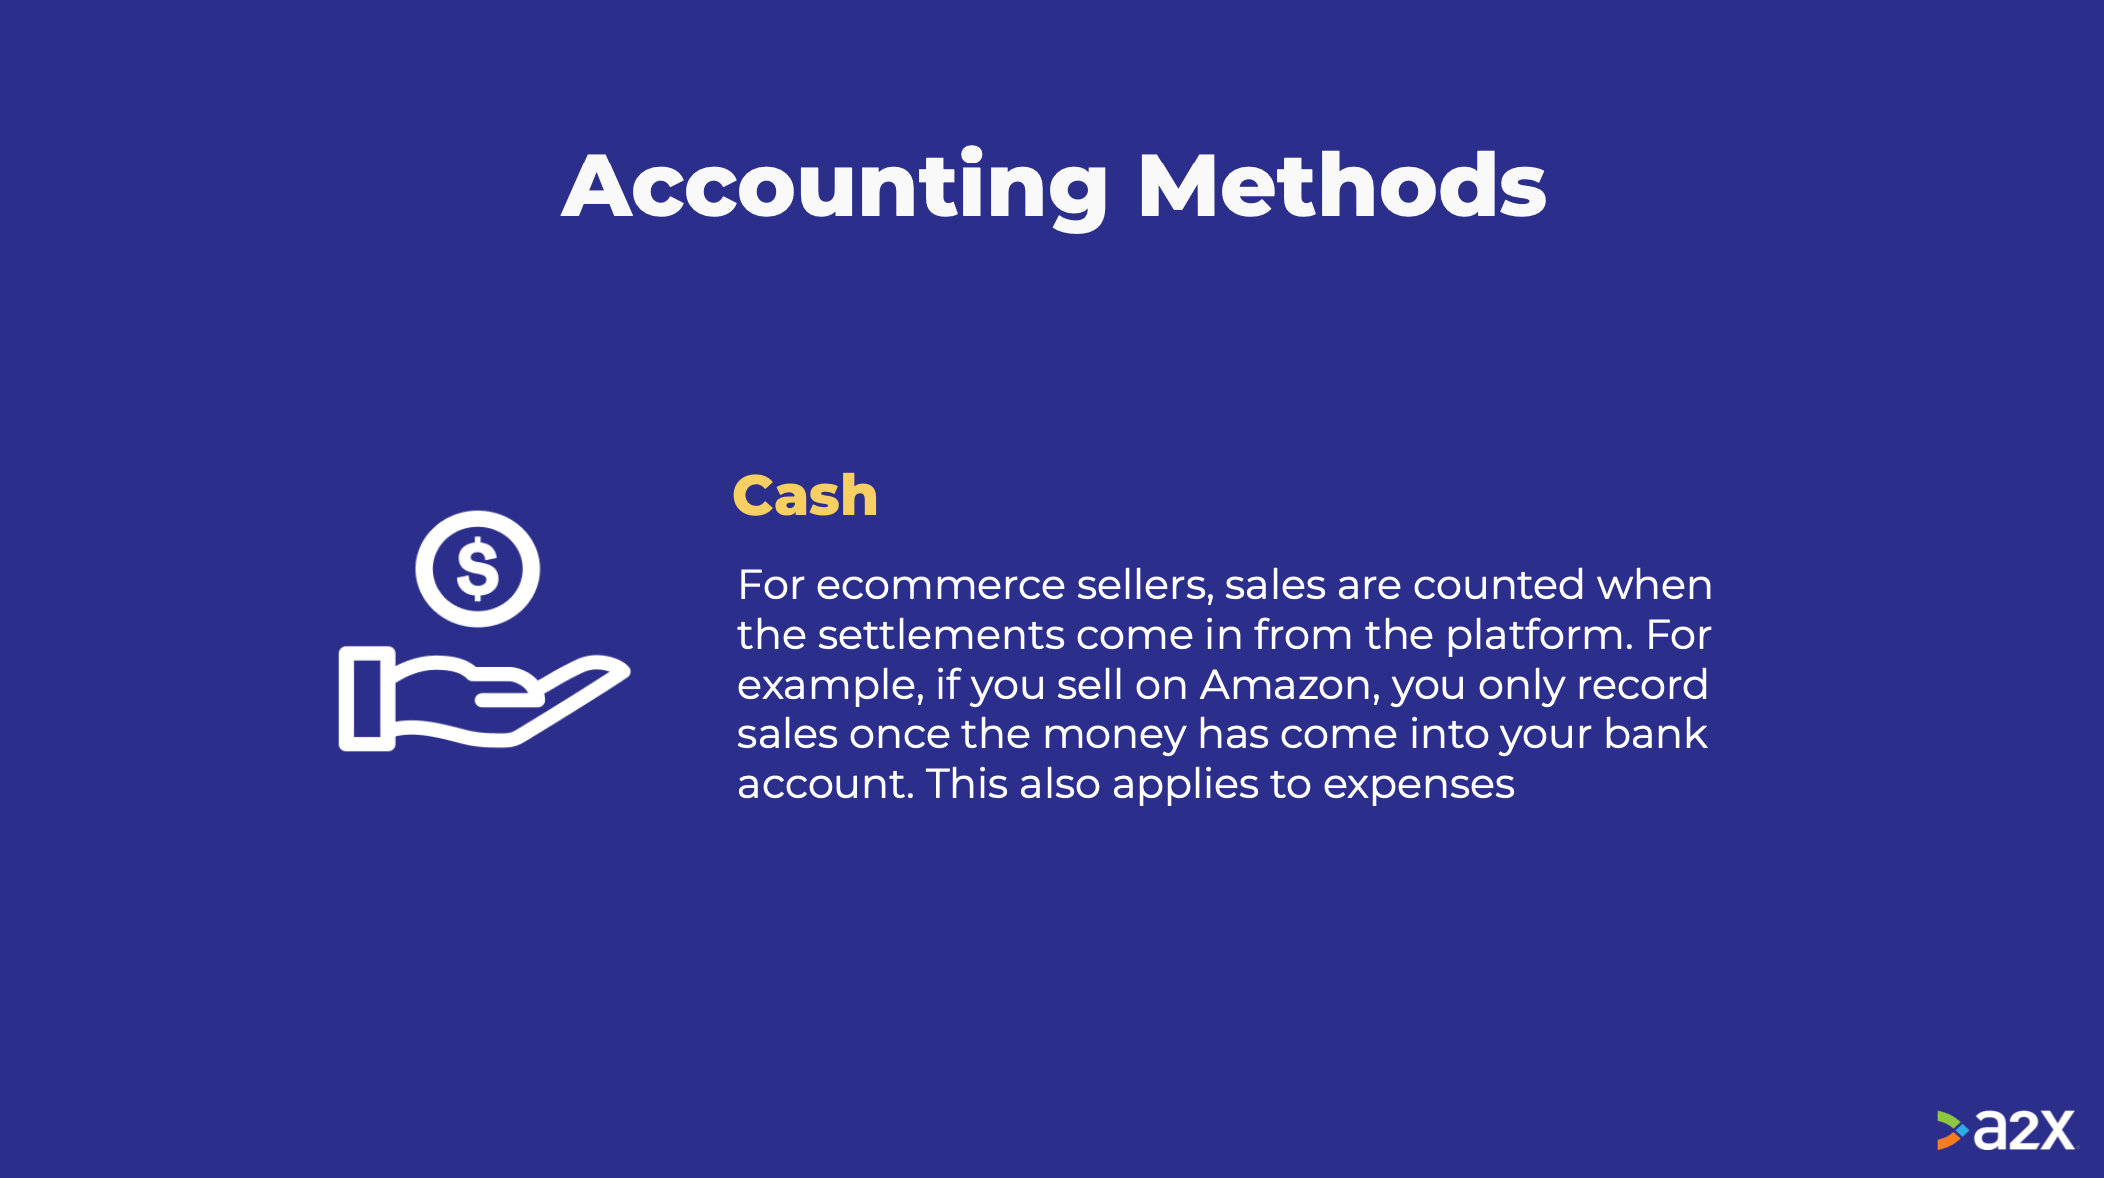 Cash basis accounting